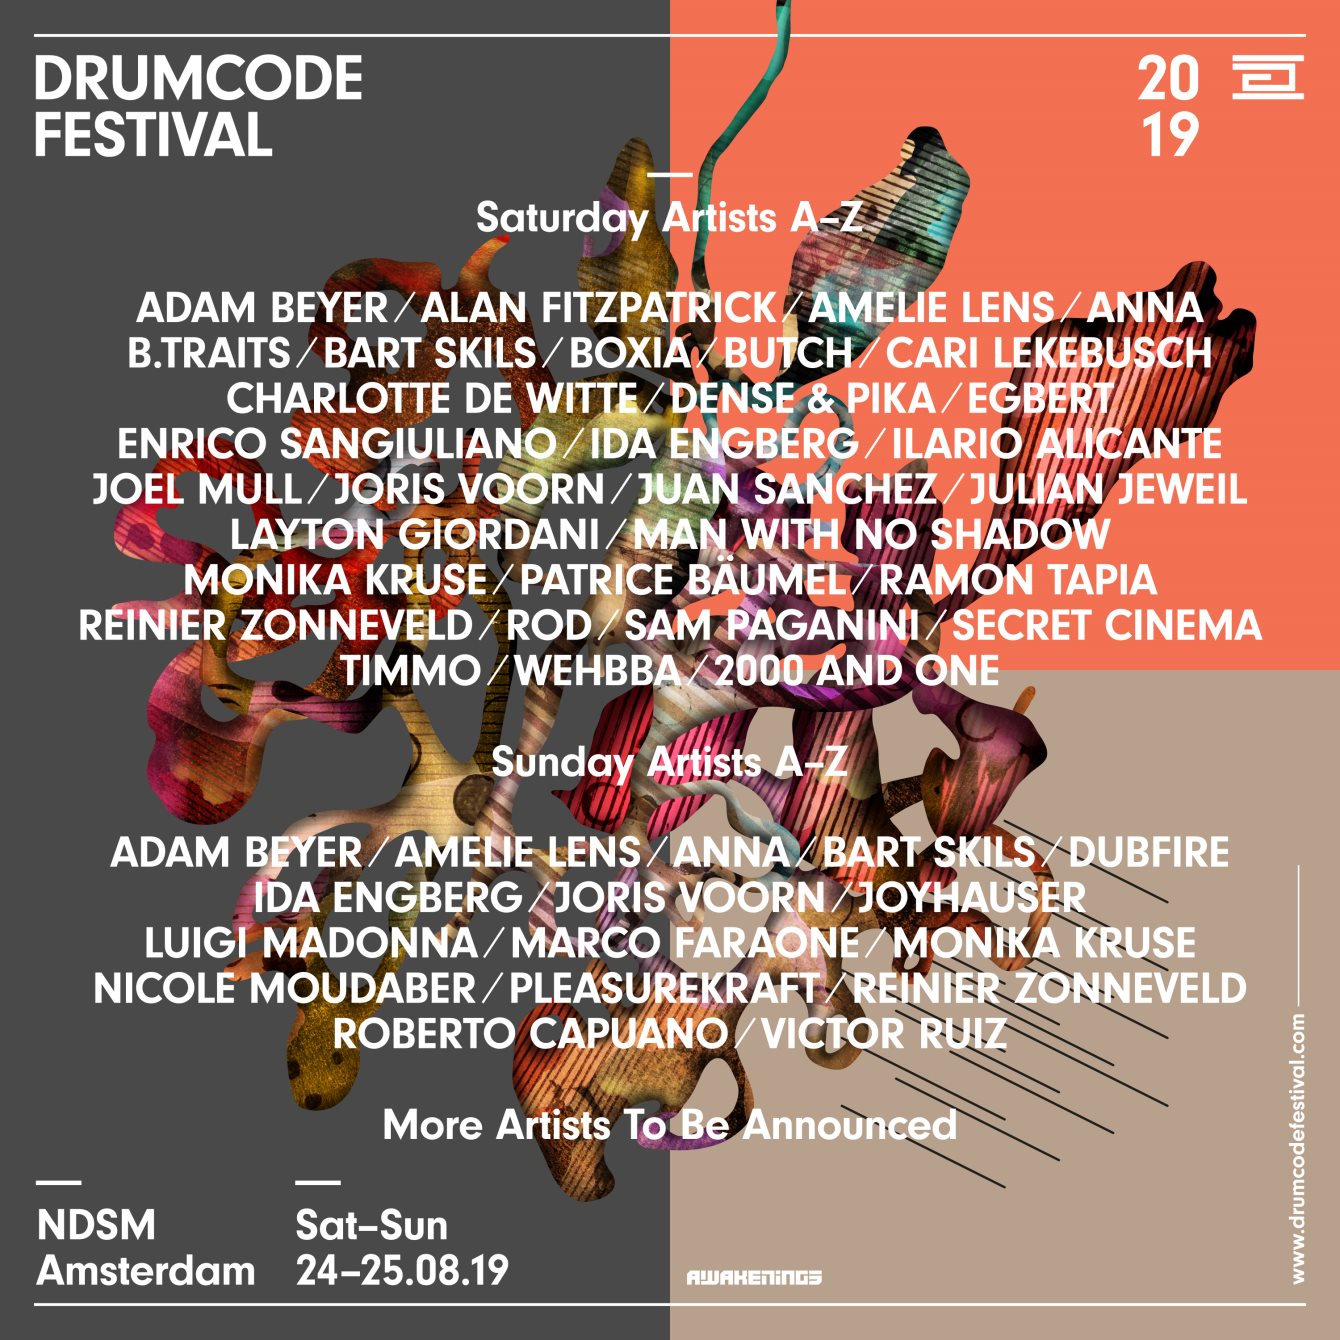 Drumcode Festival 2019 at NDSM Docklands, Amsterdam